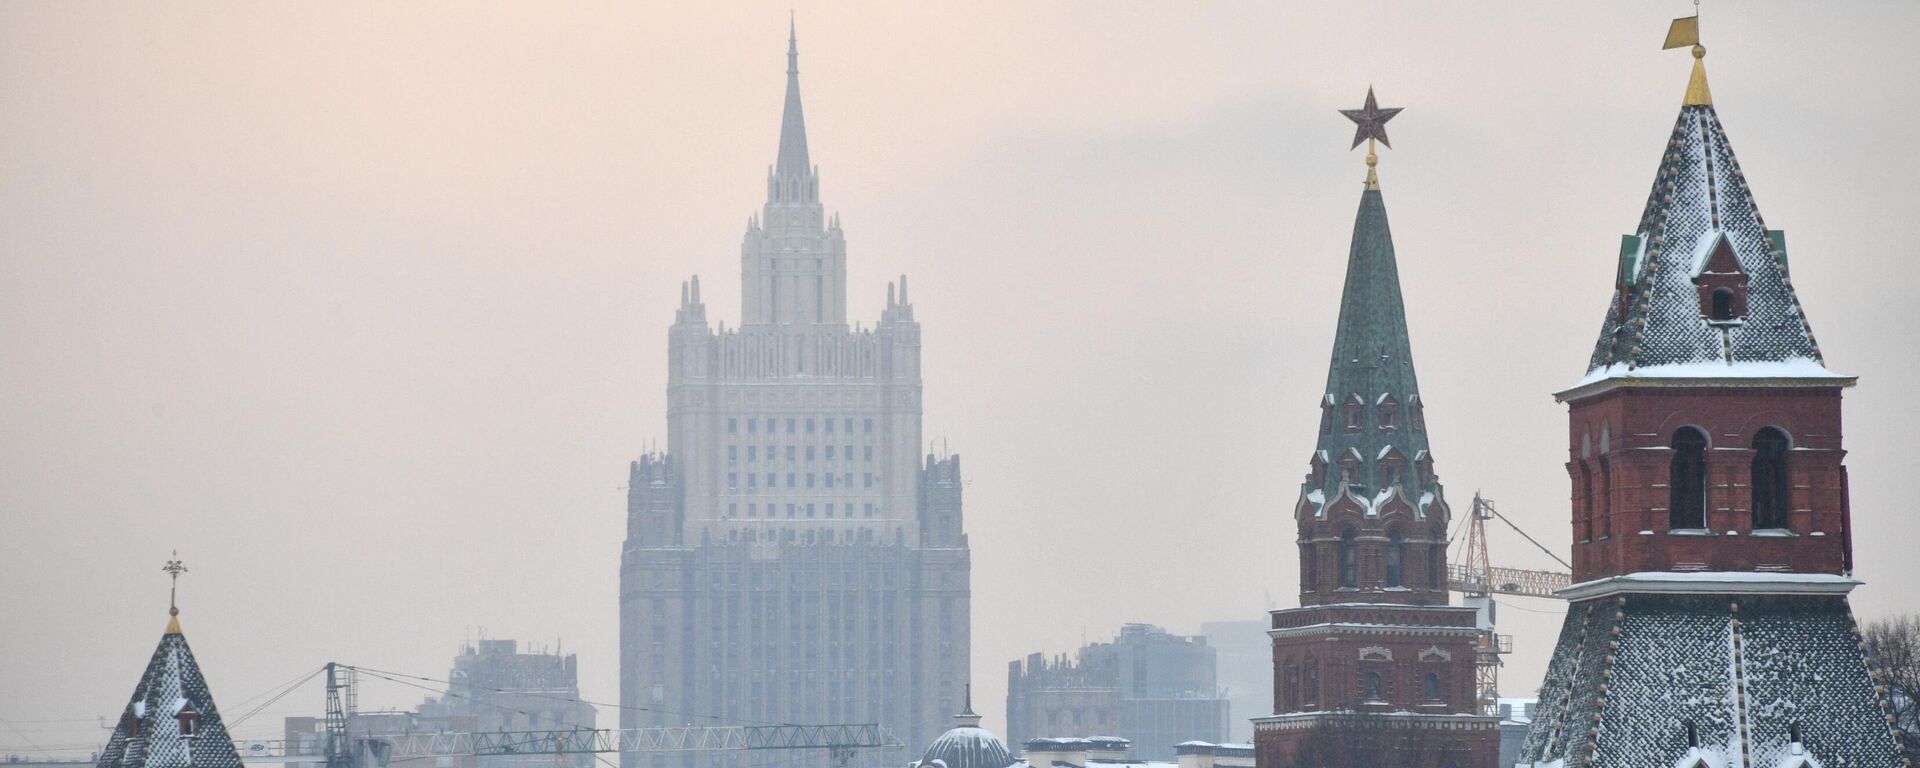 Вид на башни Московского Кремля и здание МИД РФ, архивное фото - Sputnik Литва, 1920, 27.12.2021